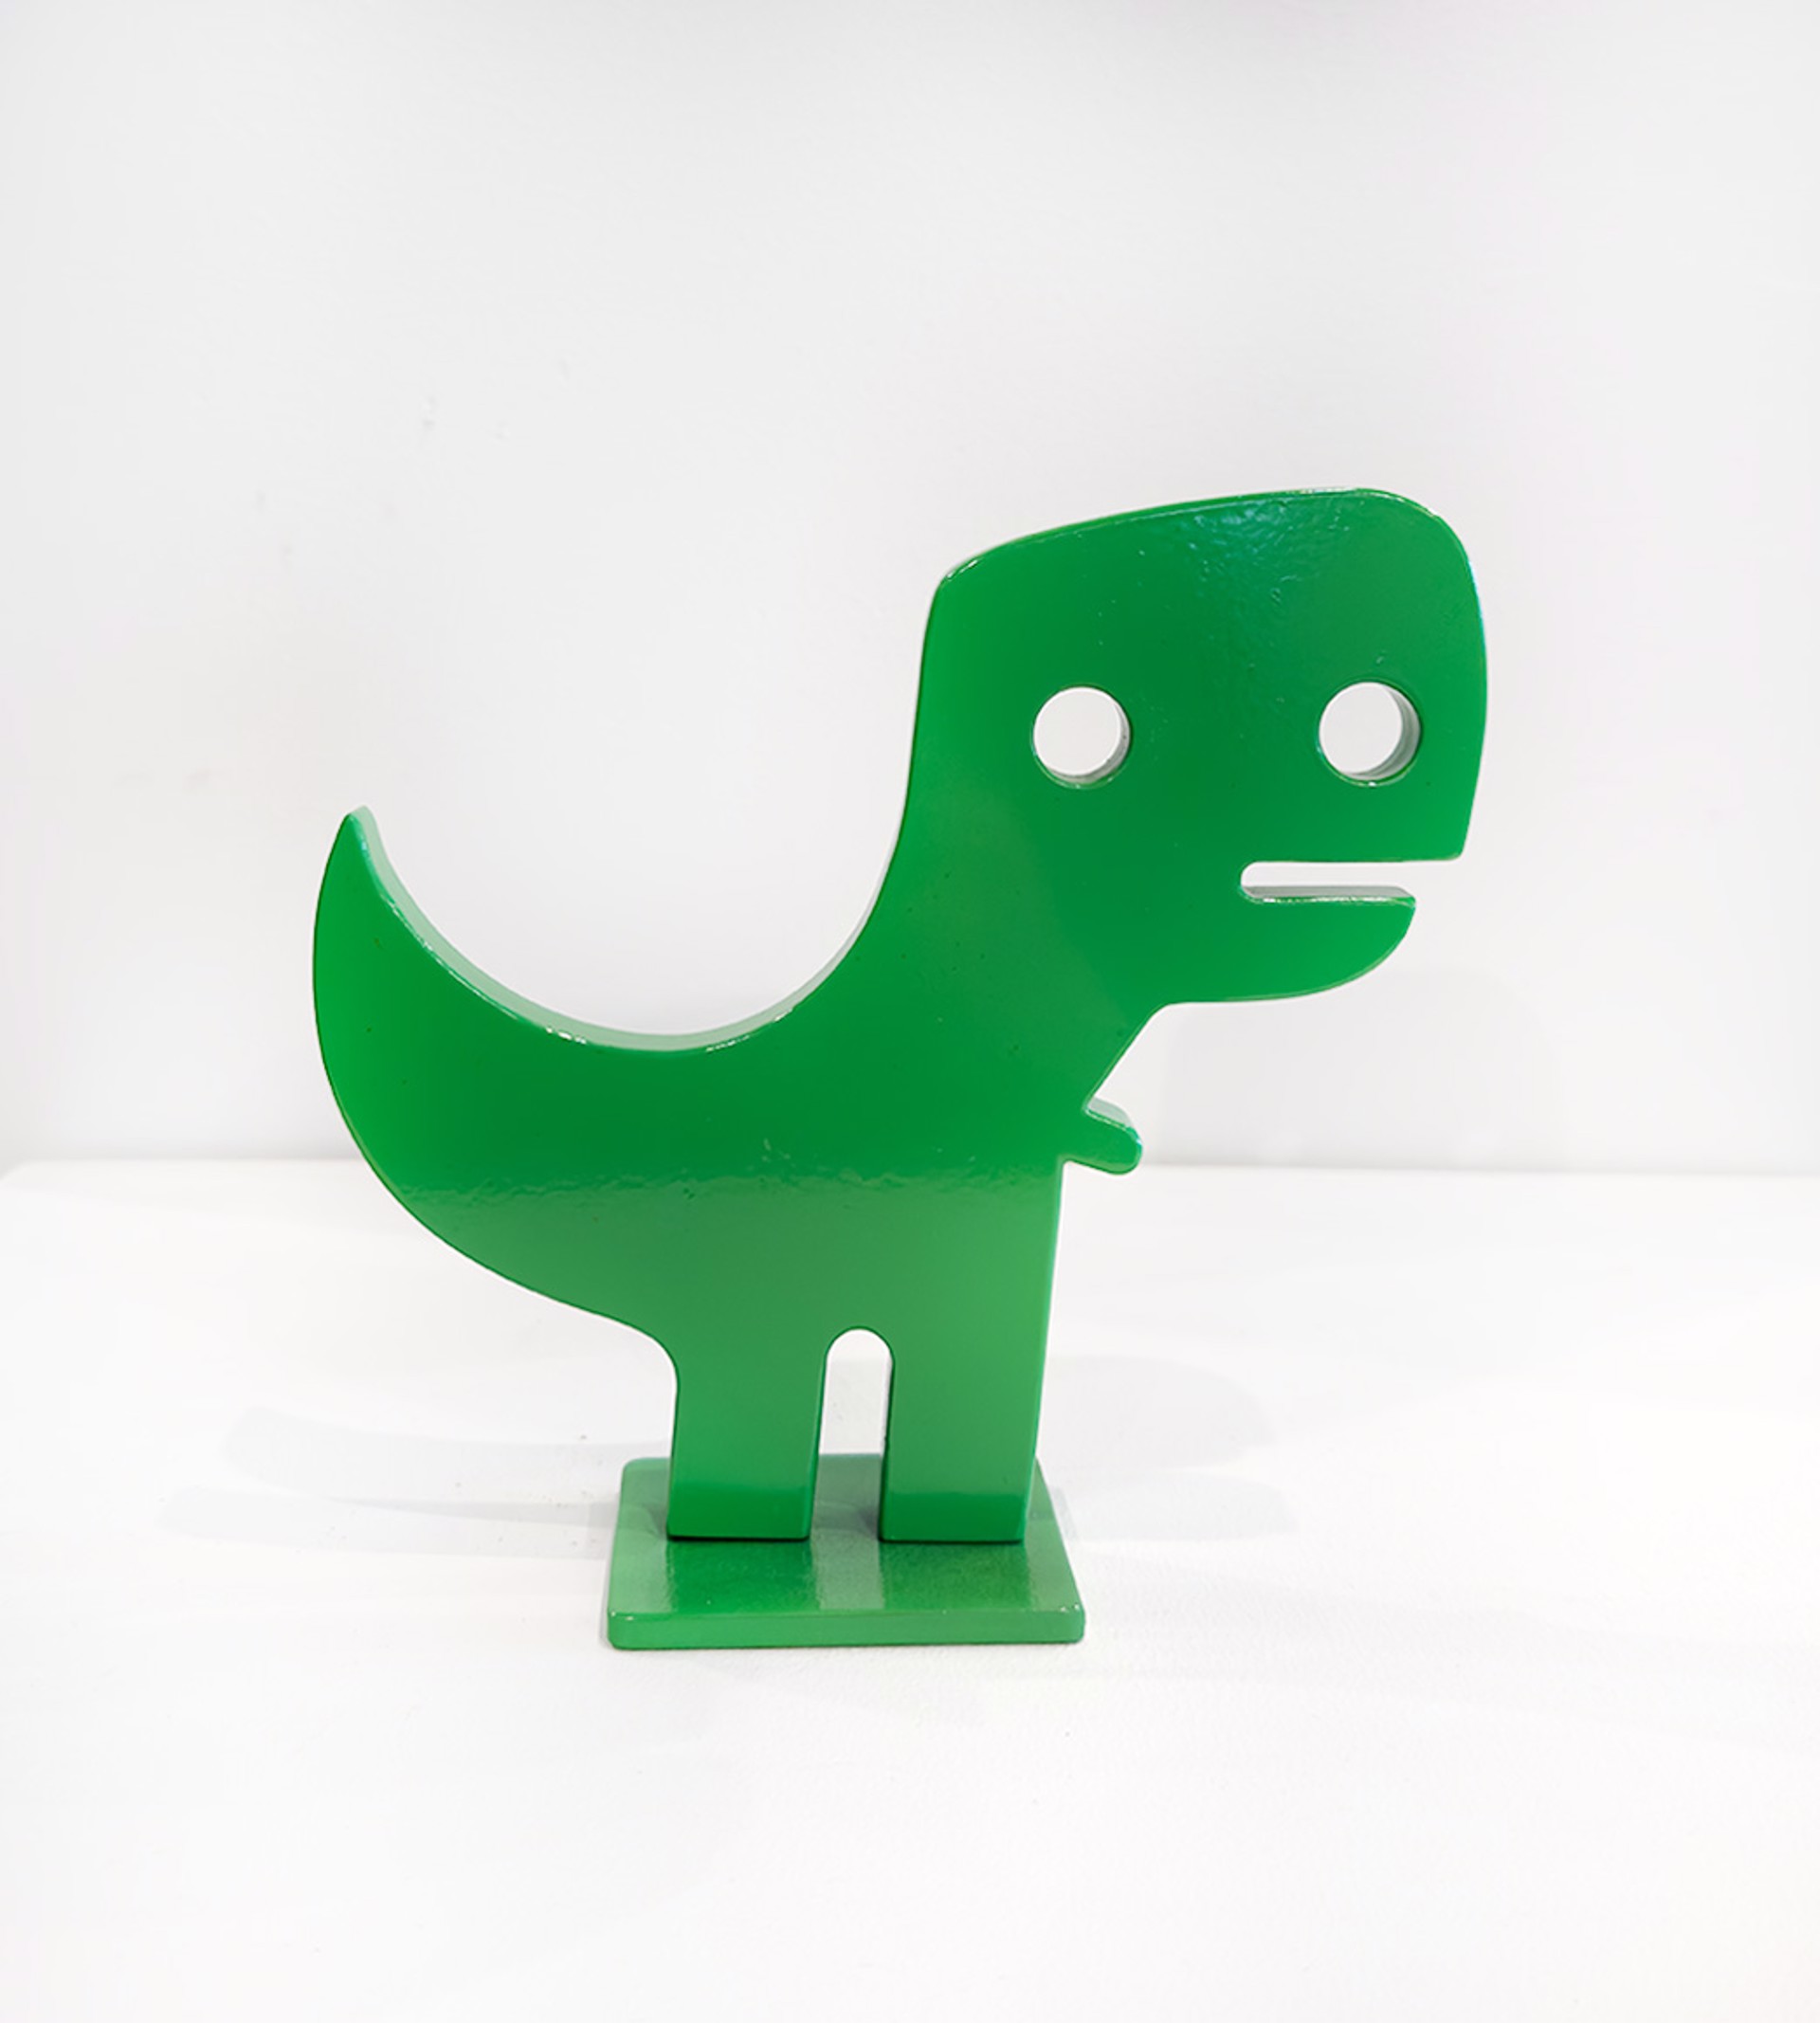 Aluminium Sculpture By Jeffie Brewer Featuring A Green T Rex